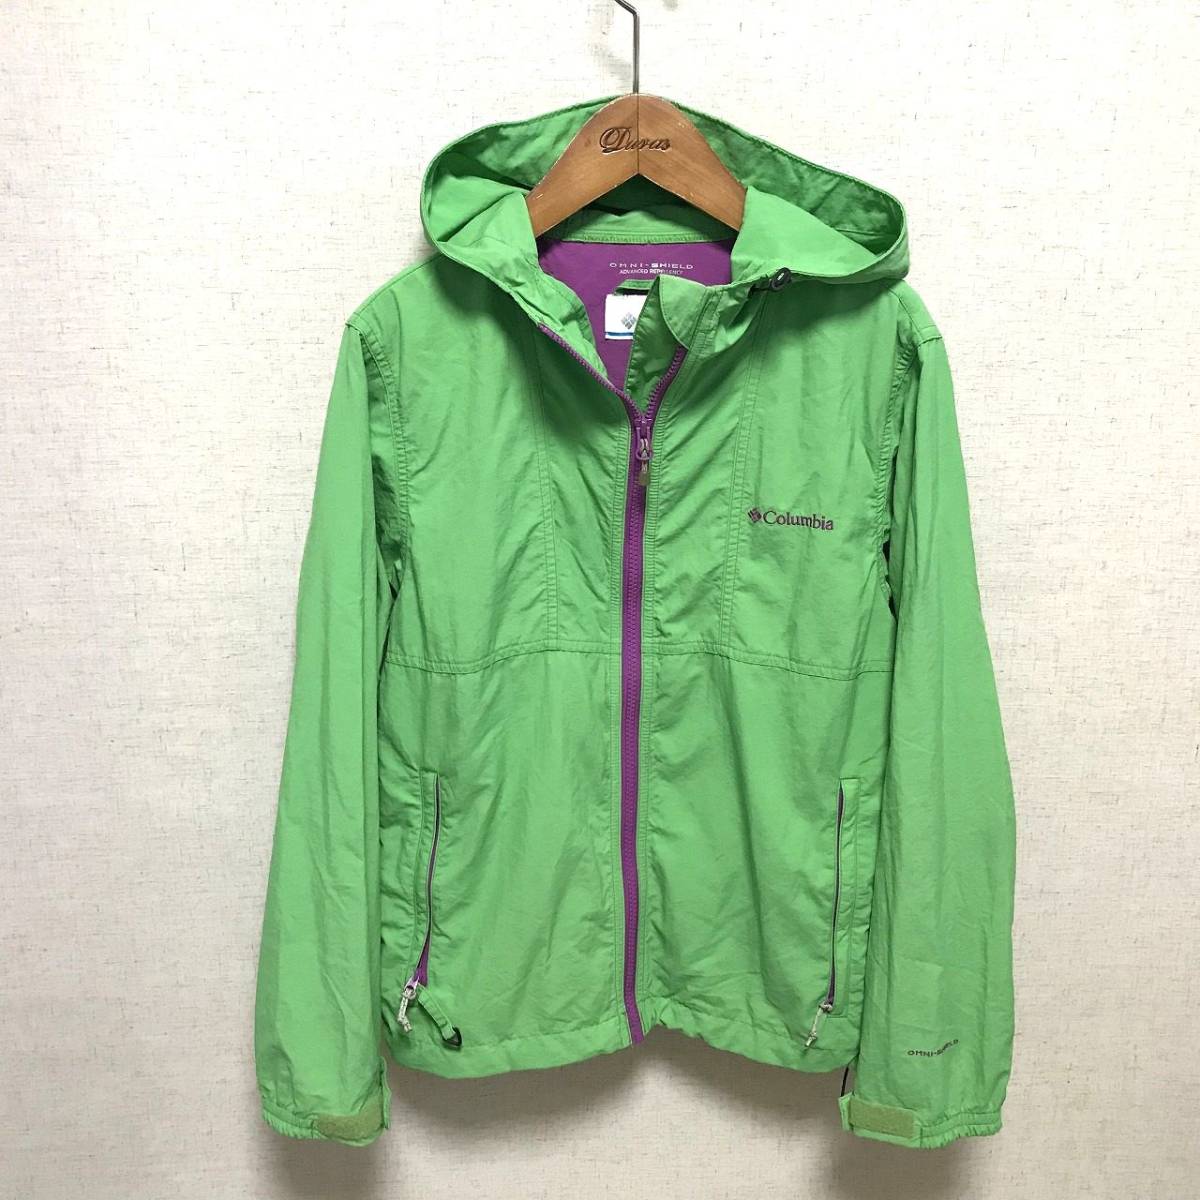  Colombia S nylon jacket OMNI-SHIELD mountain jacket green 2003HA-129*6#/5